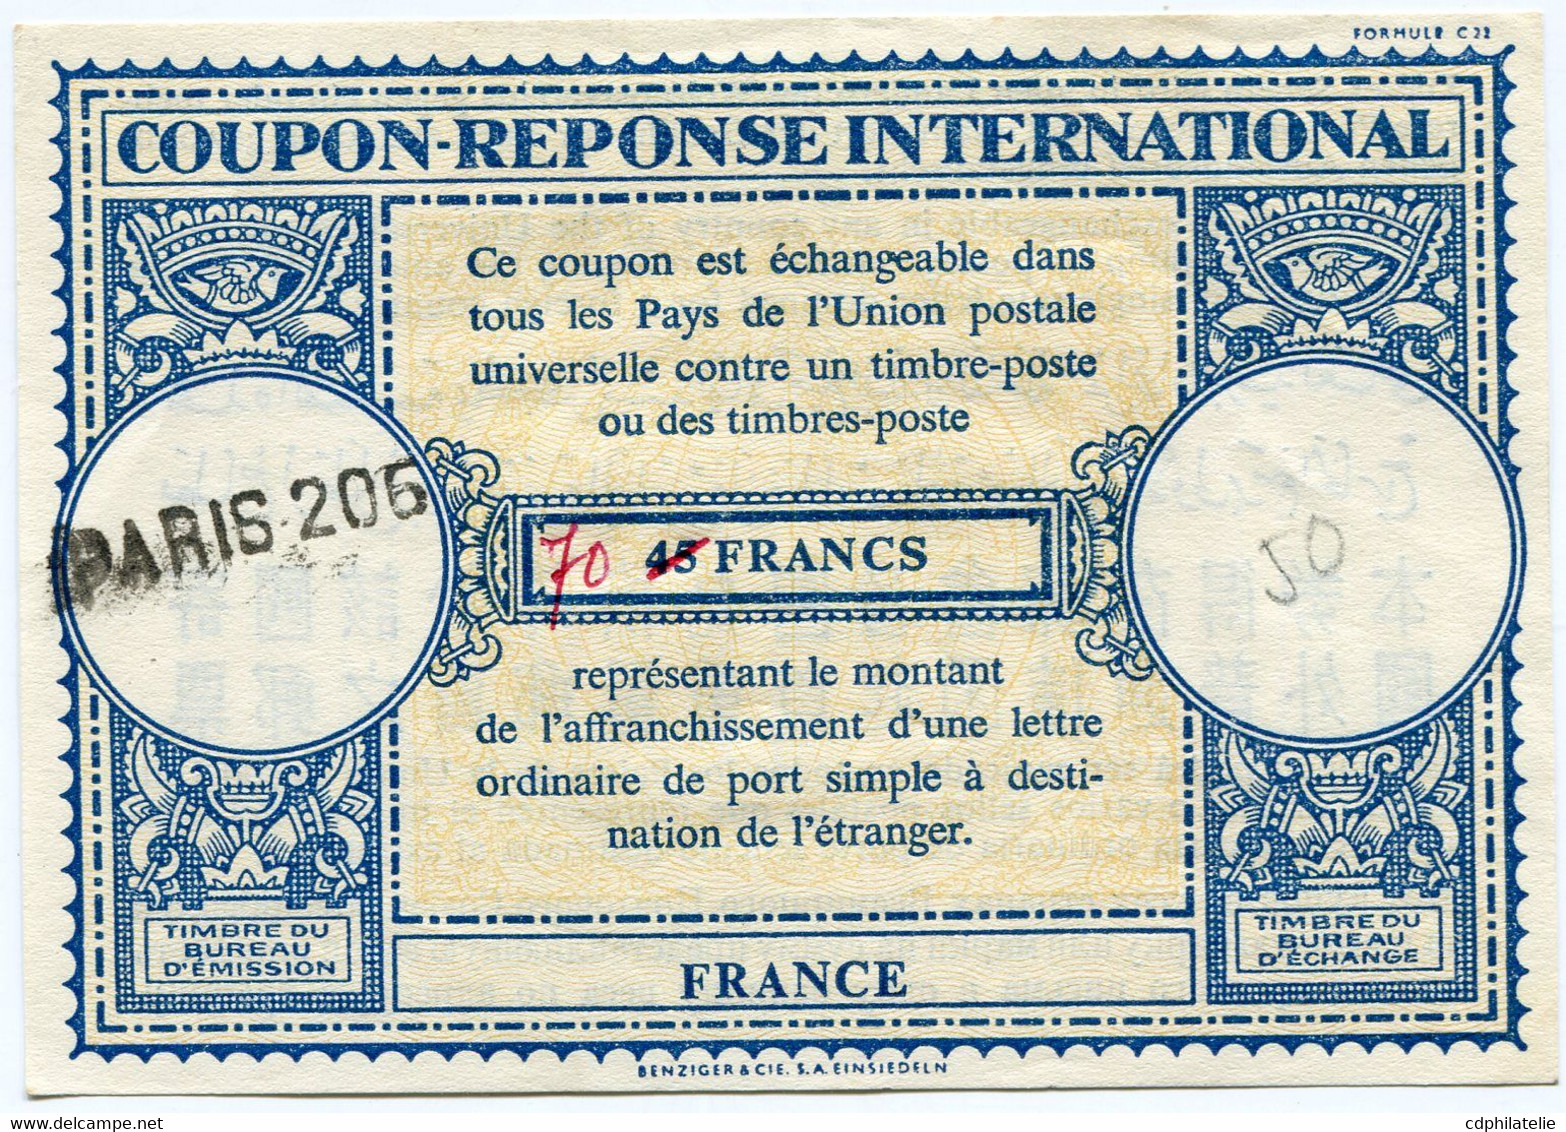 FRANCE COUPON-REPONSE INTERNATIONAL DE 45 FRANCS AVEC MODIFICATION MANUSCRITE DE TARIF 70 FRANCS AVEC OBL PARIS 206 - Coupons-réponse